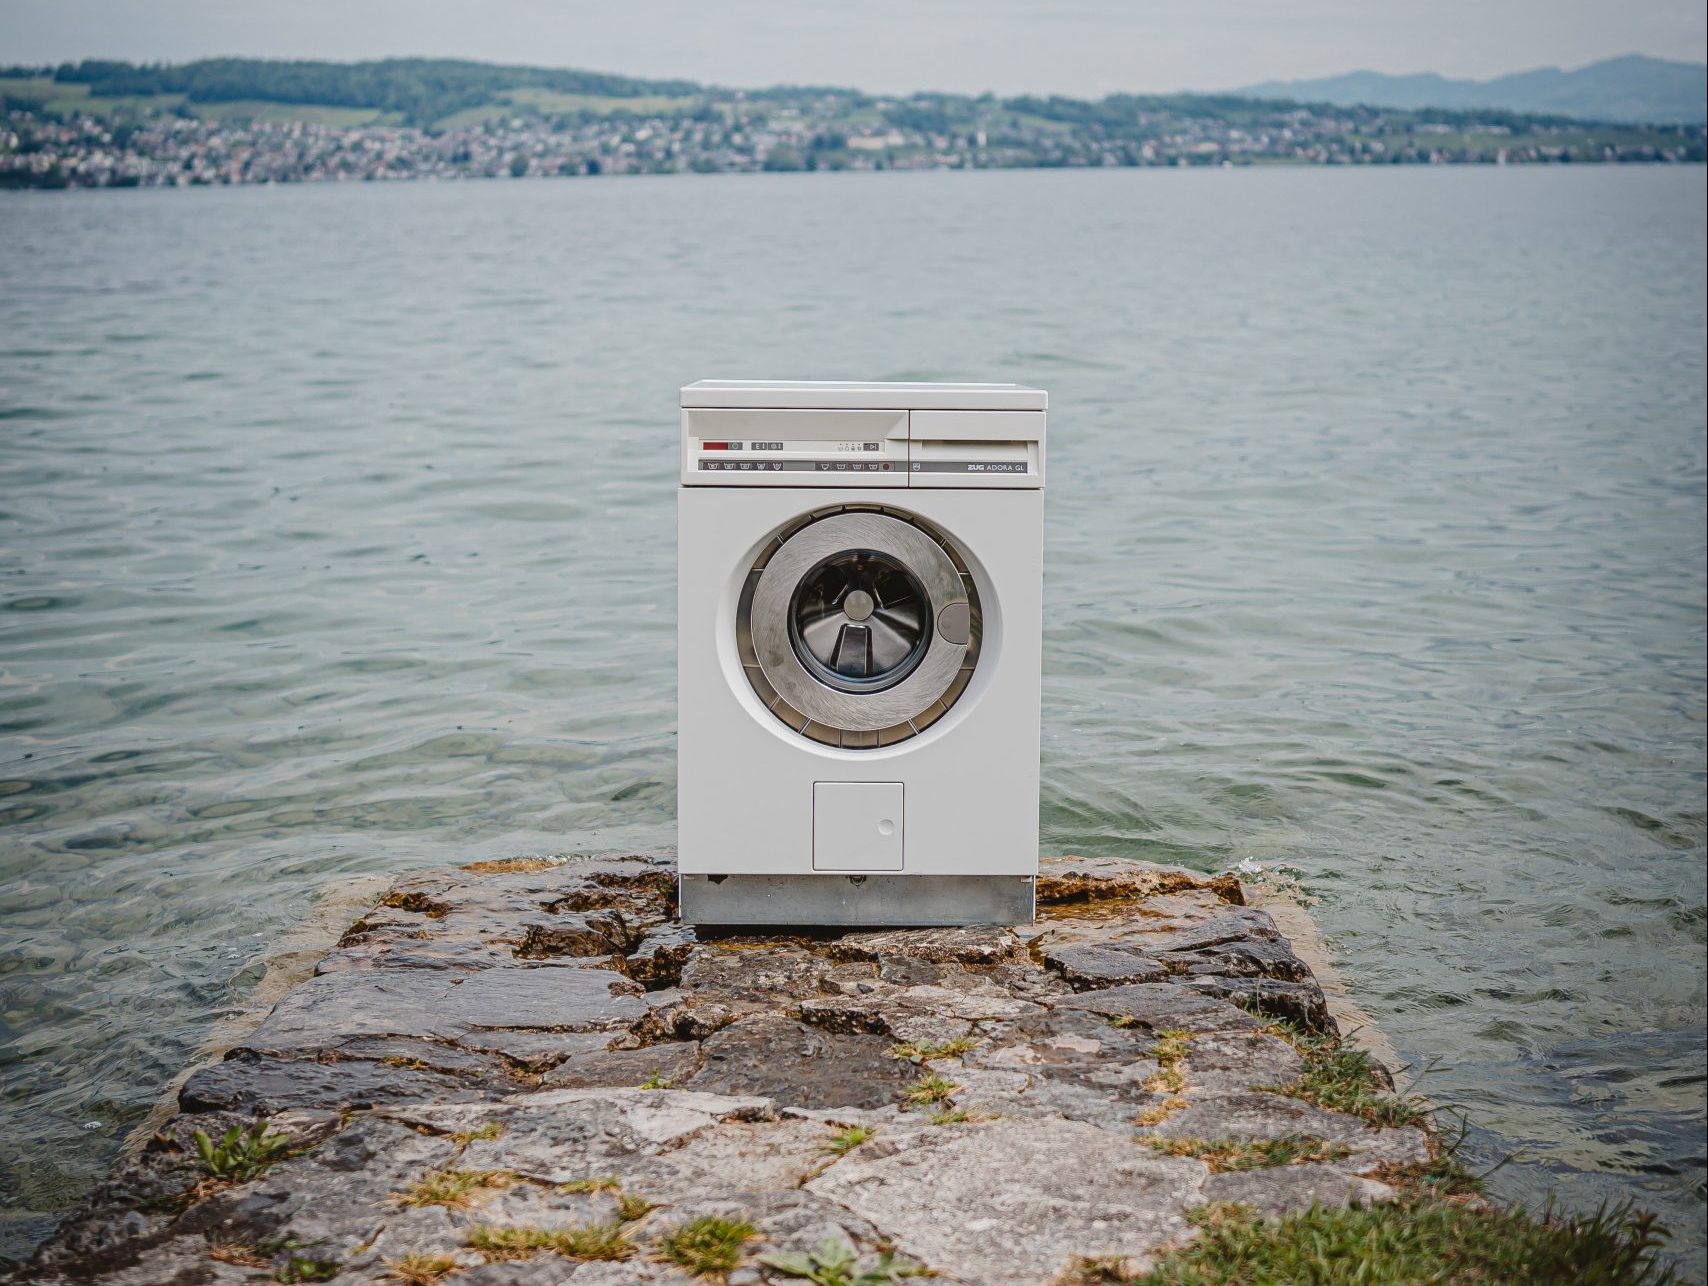 Mitt Illustreren hoe Is dure of goedkope wasmachine beter voor de energierekening?